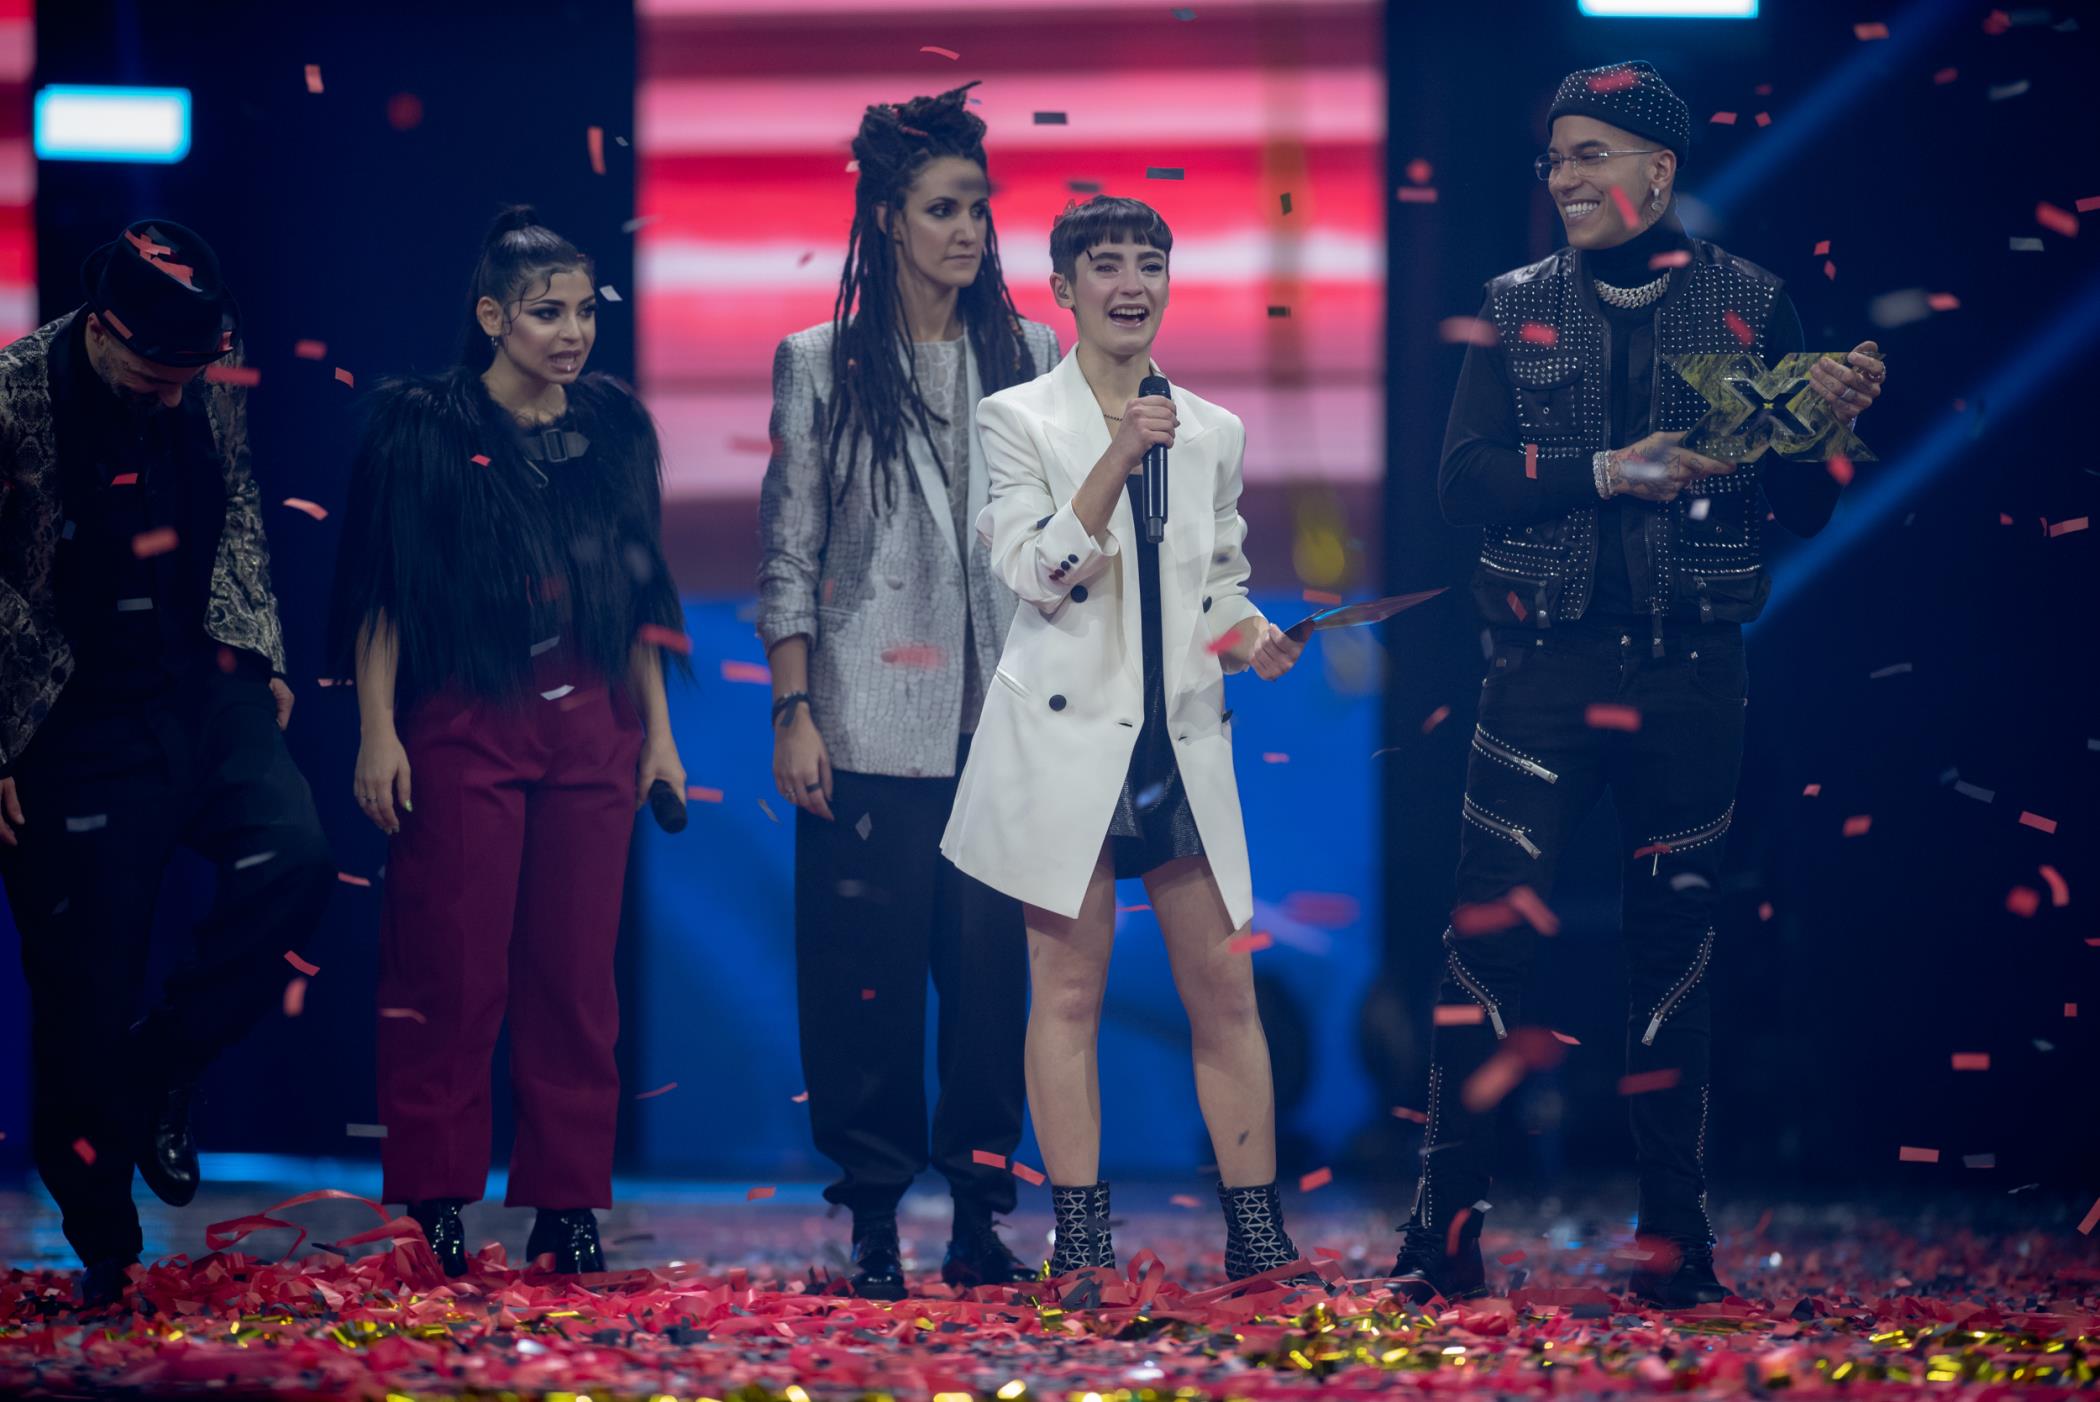 Sofia ha vinto l'edizione 2019 di X Factor [credit: Sky]